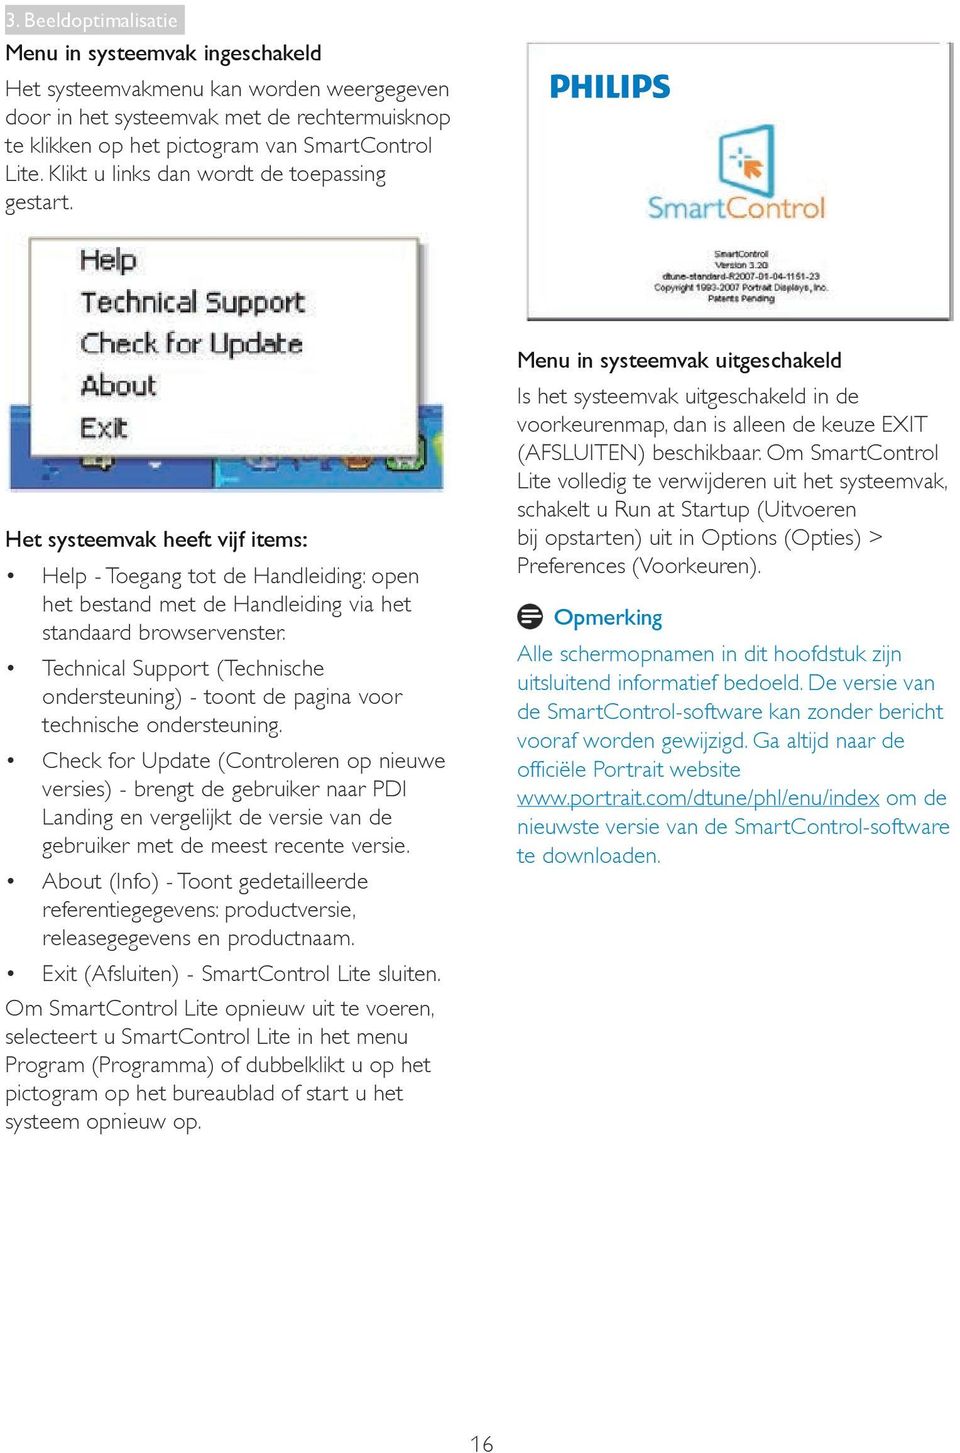 Technical Support (Technische ondersteuning) - toont de pagina voor technische ondersteuning.